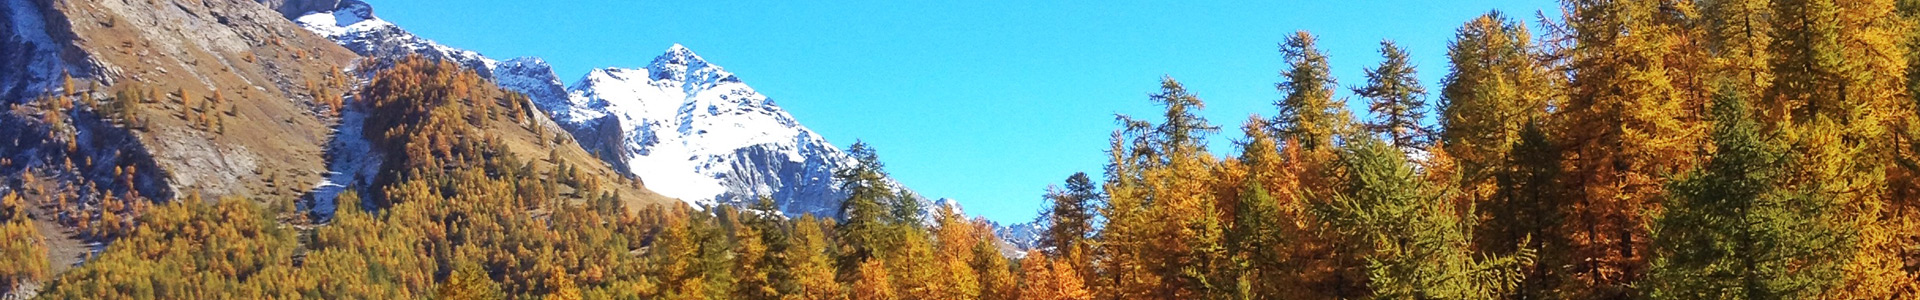 autumn hautes alpes